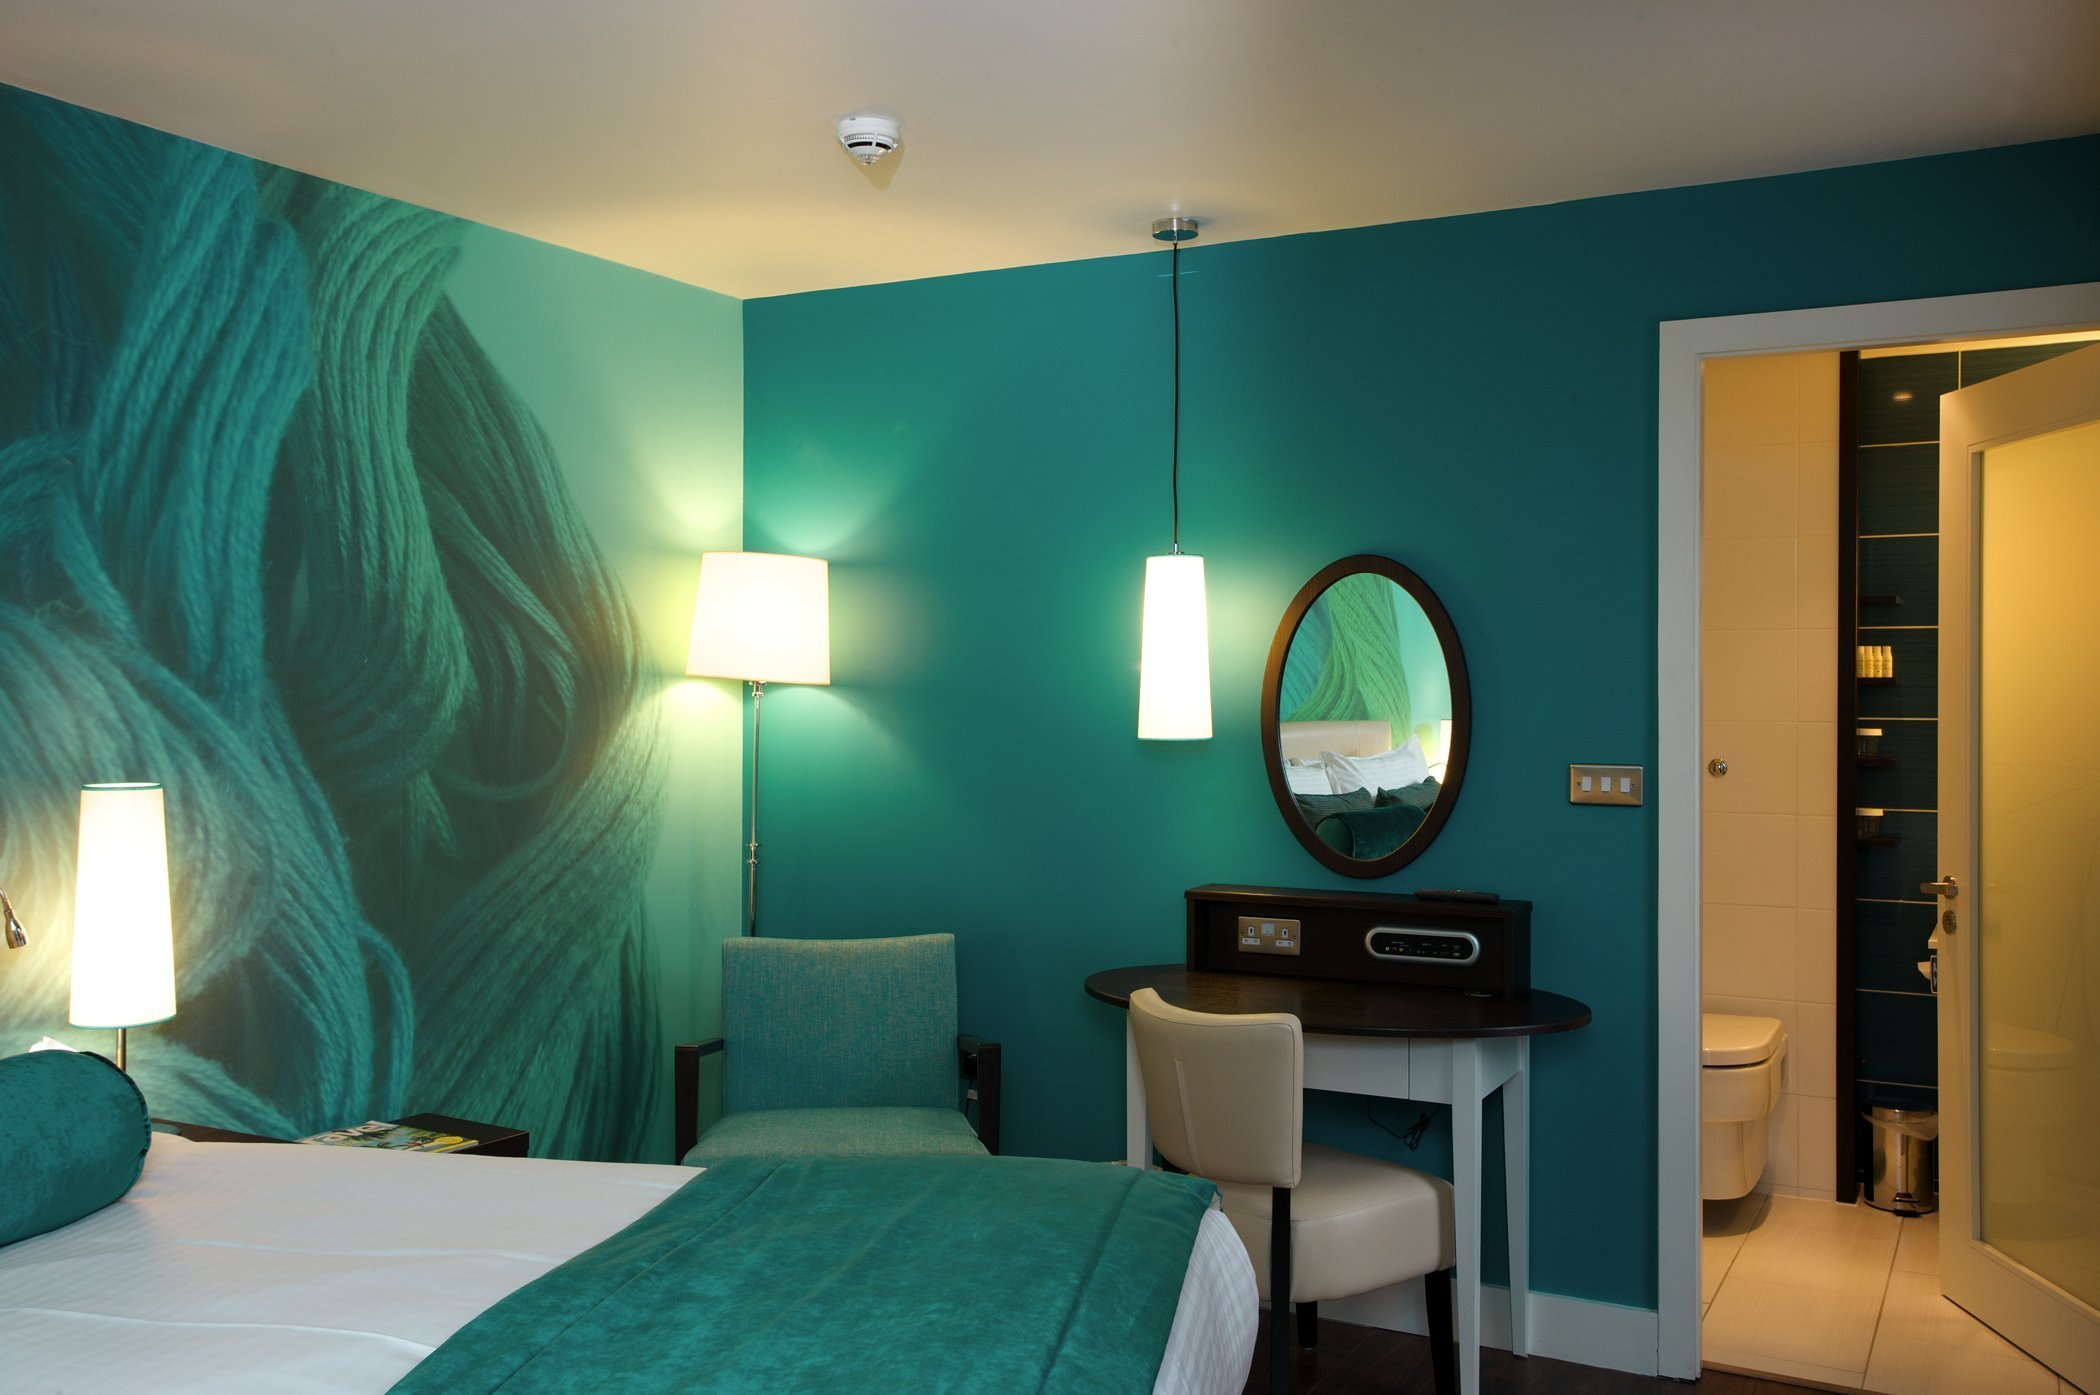 Красиво покрасить комнату. Интерьер в бирюзовых тонах. Спальня цвета морской волны. Зеленые обои в спальне. Бирюзовый цвет в интерьере.